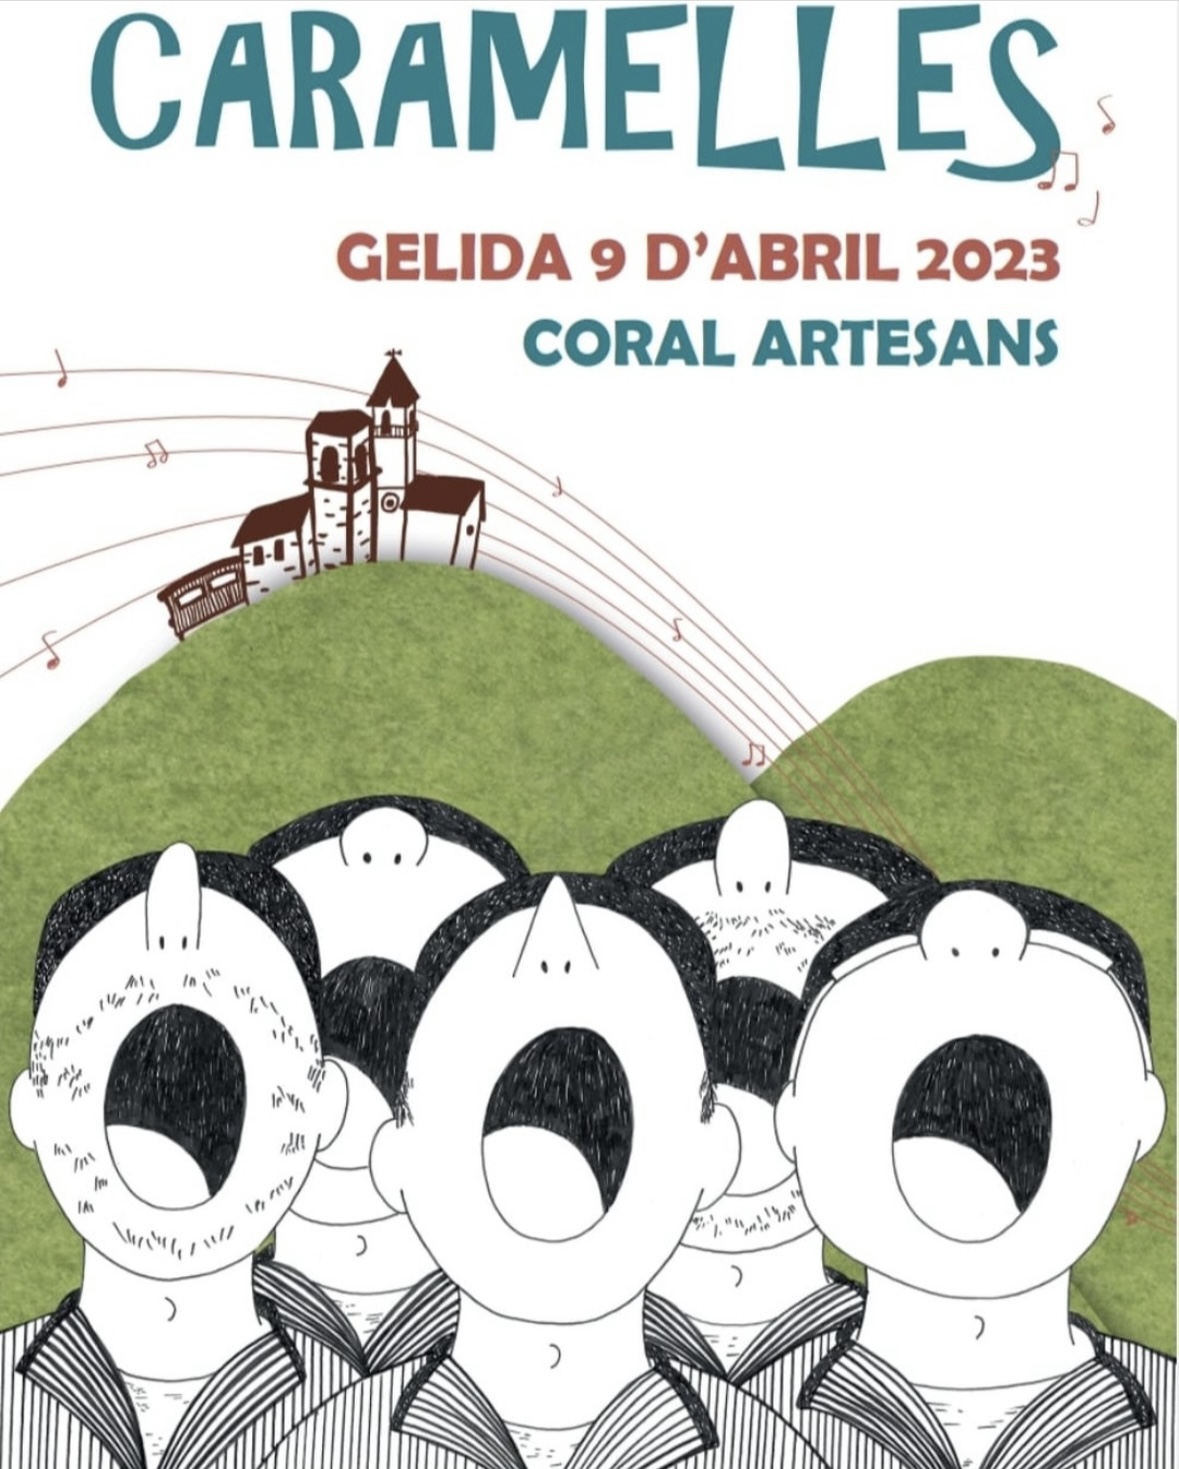 La Bustia cartell caramelles Coral Artesans Gelida